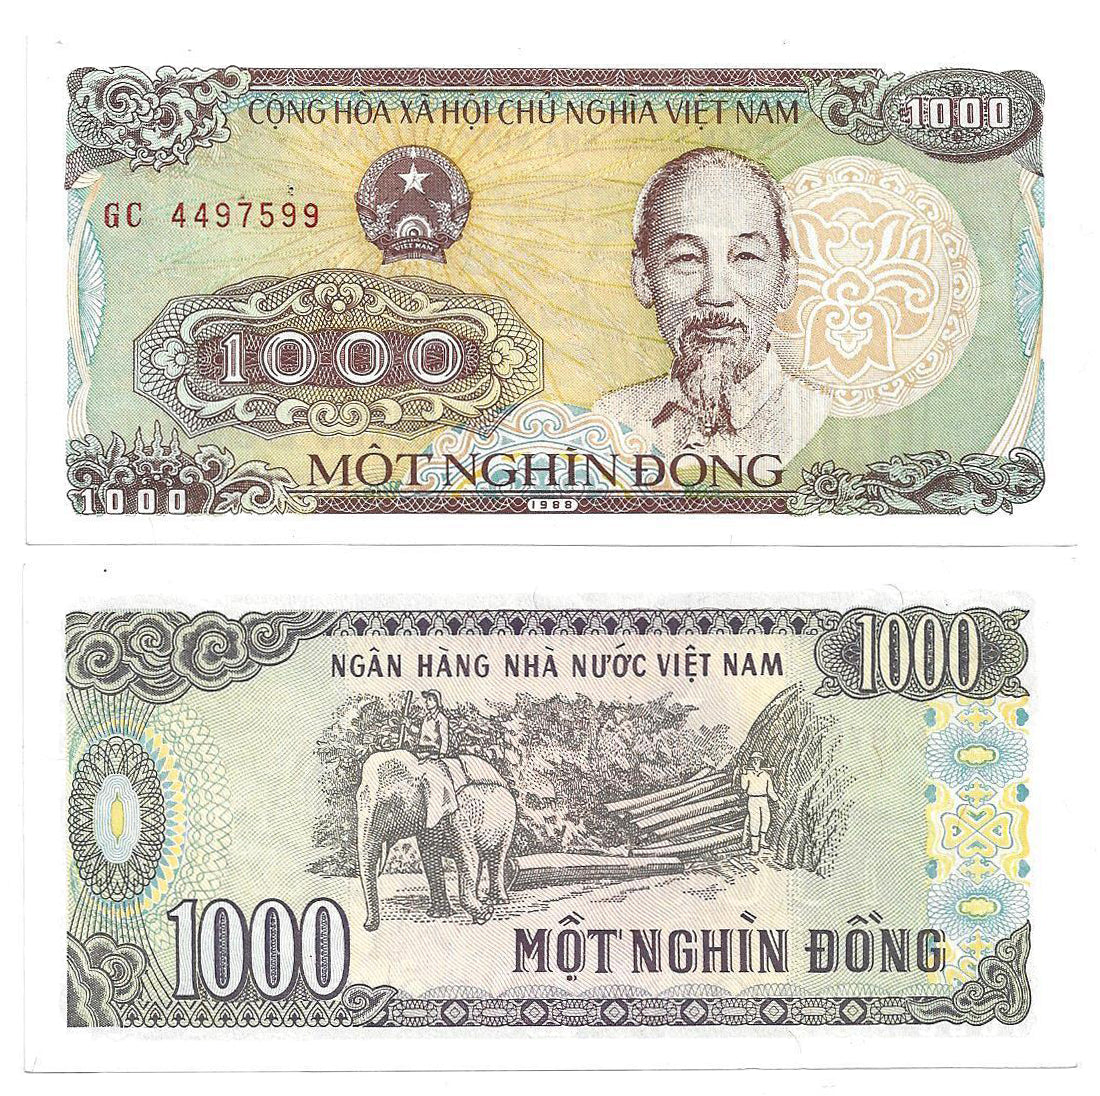 VIETNAM 1000 DONG | BANKNOTE 1988 UNC